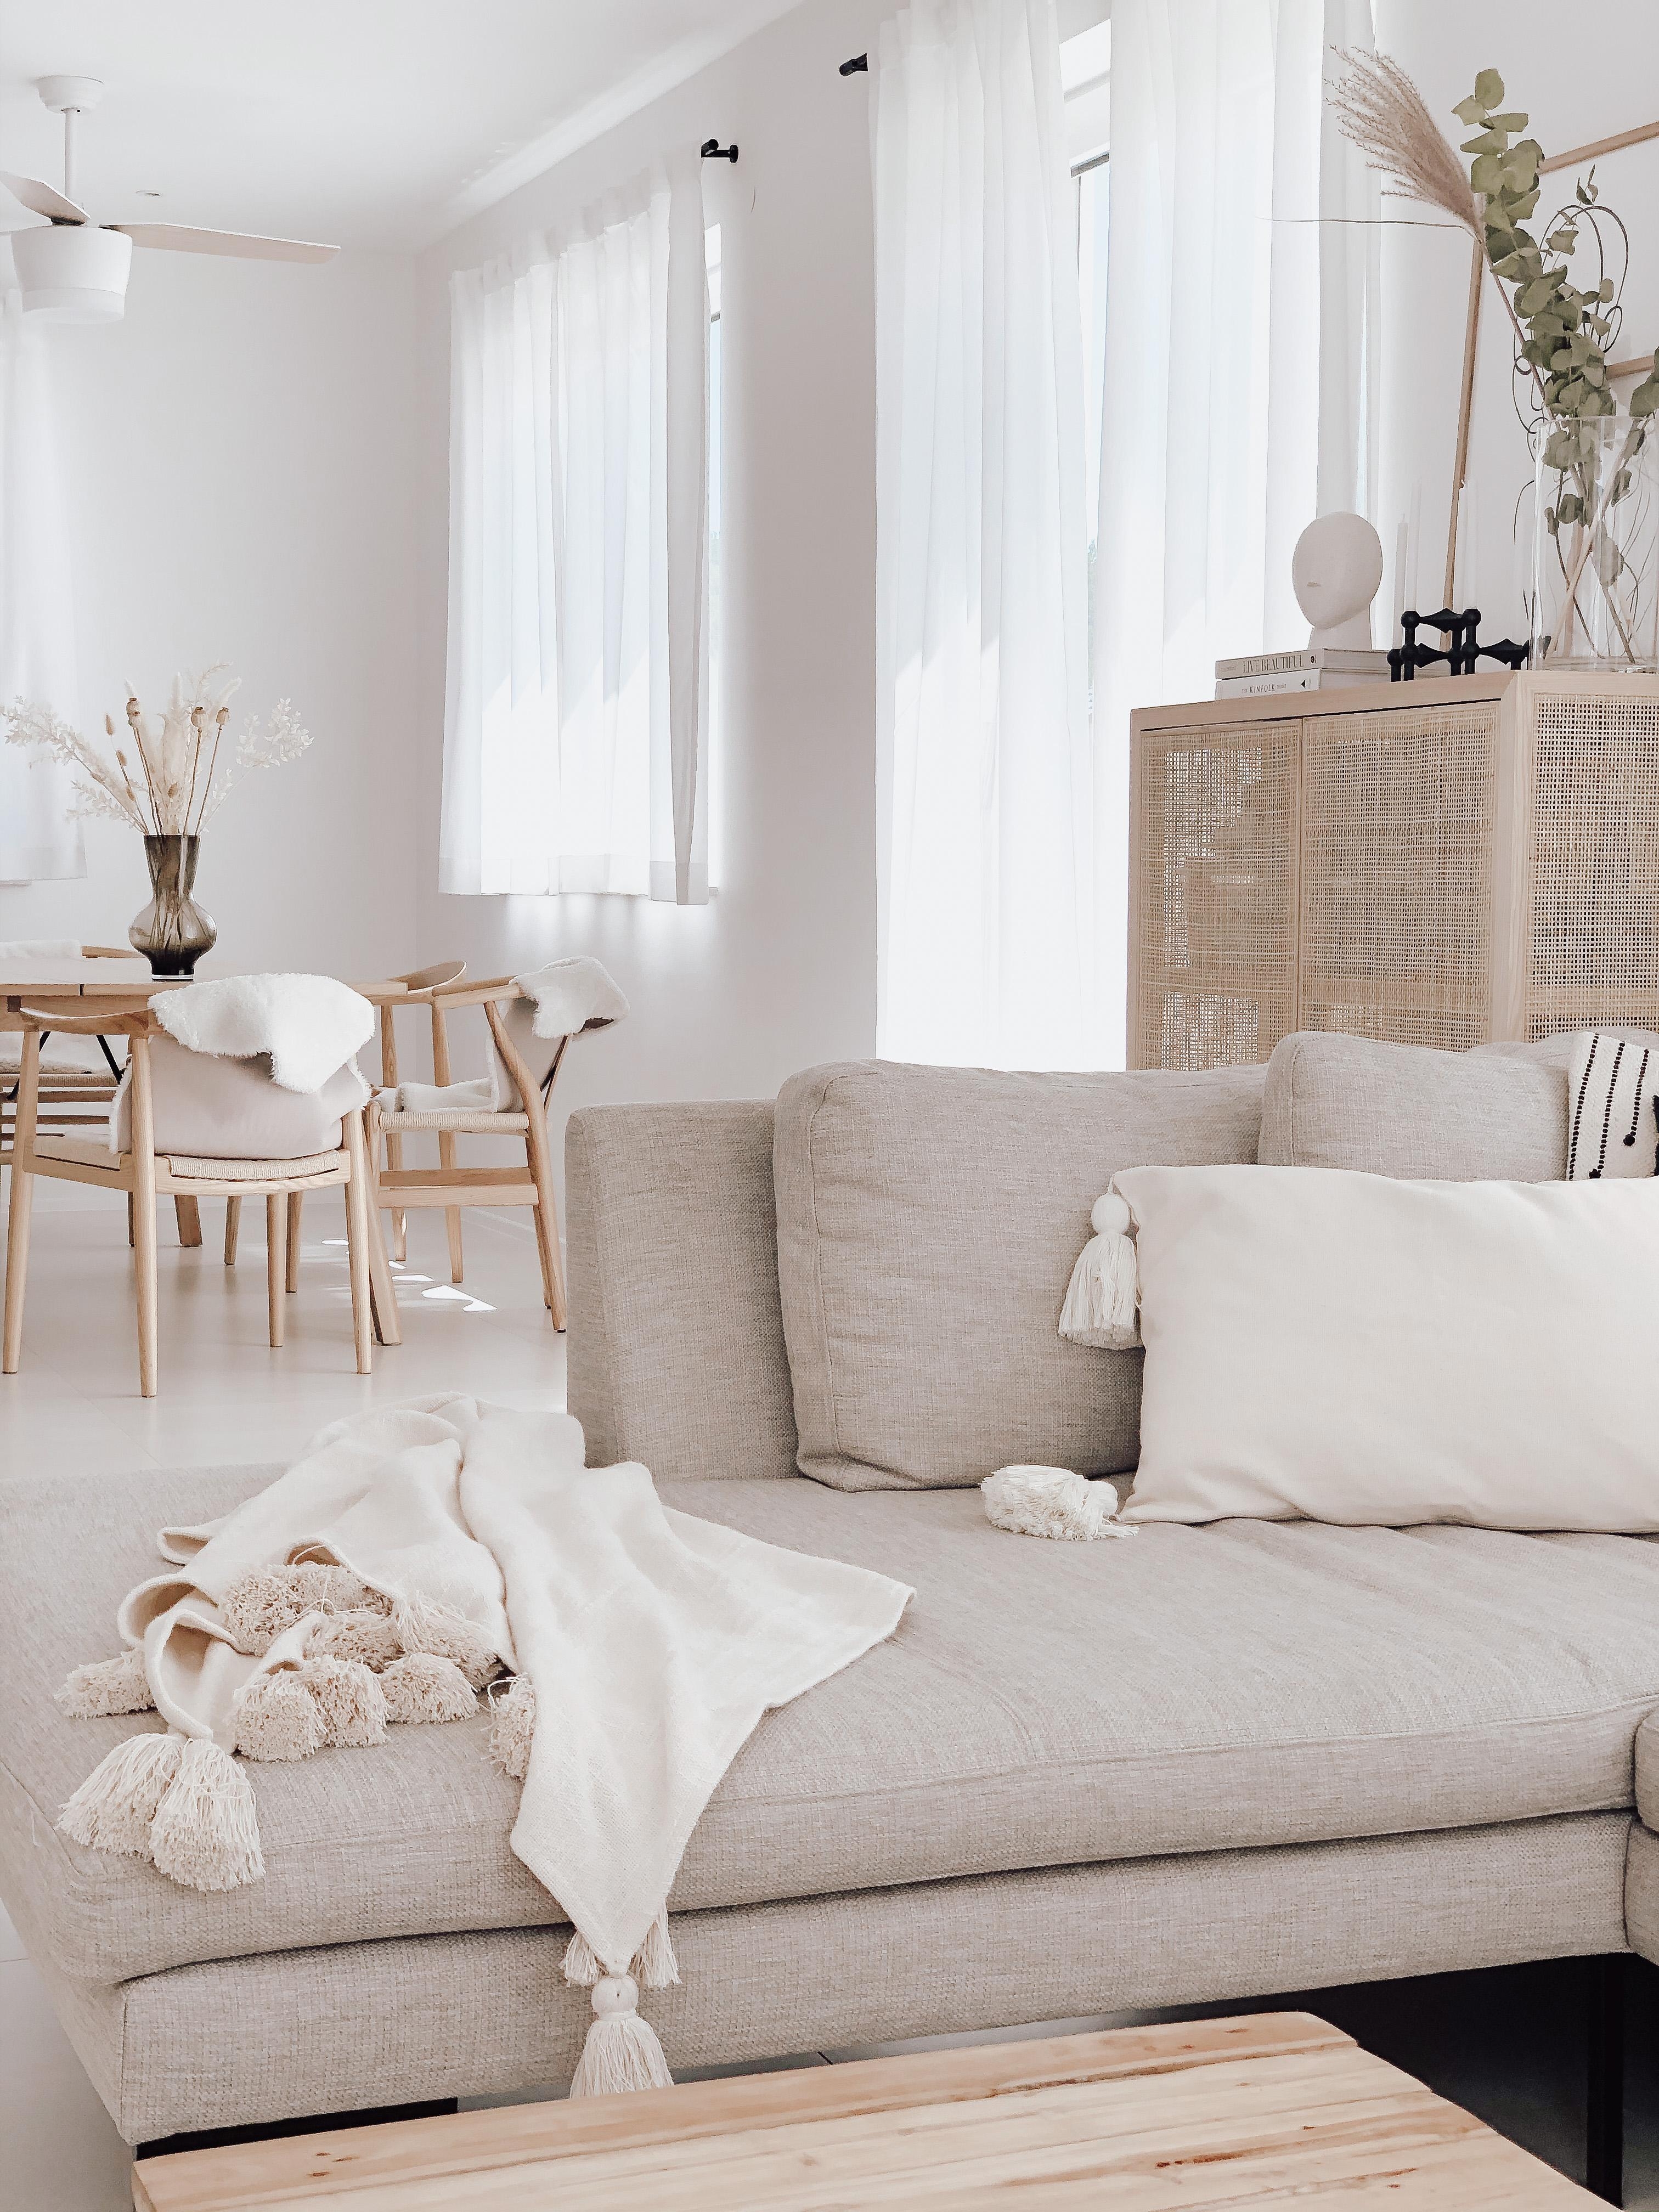 Viele Fenster, hohe Decken, zusammen mit einem hellen Farbkonzept. Frei, hell, luftig und gemütlich. #livingroom #inspo